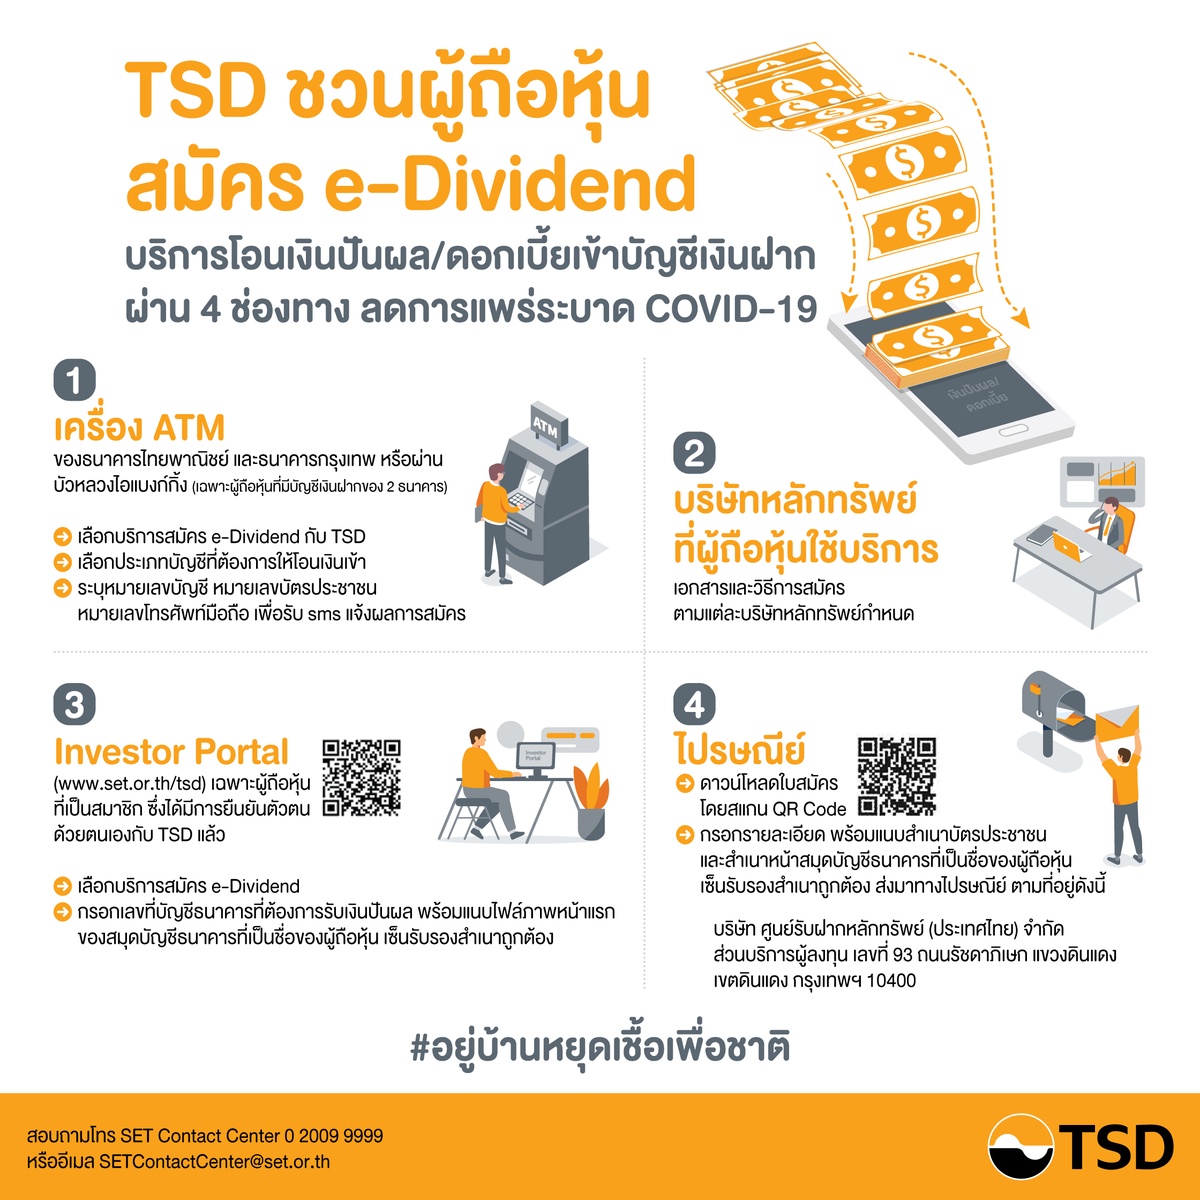 ลาดหลักทรัพย์แห่งประเทศไทย ขอนำส่งข่าวสั้น TSDเชิญชวนผู้ถือหุ้นสมัครใช้บริการ e-Dividendผ่านออนไลน์ ลดการแพร่ระบาดโรคCOVID-19